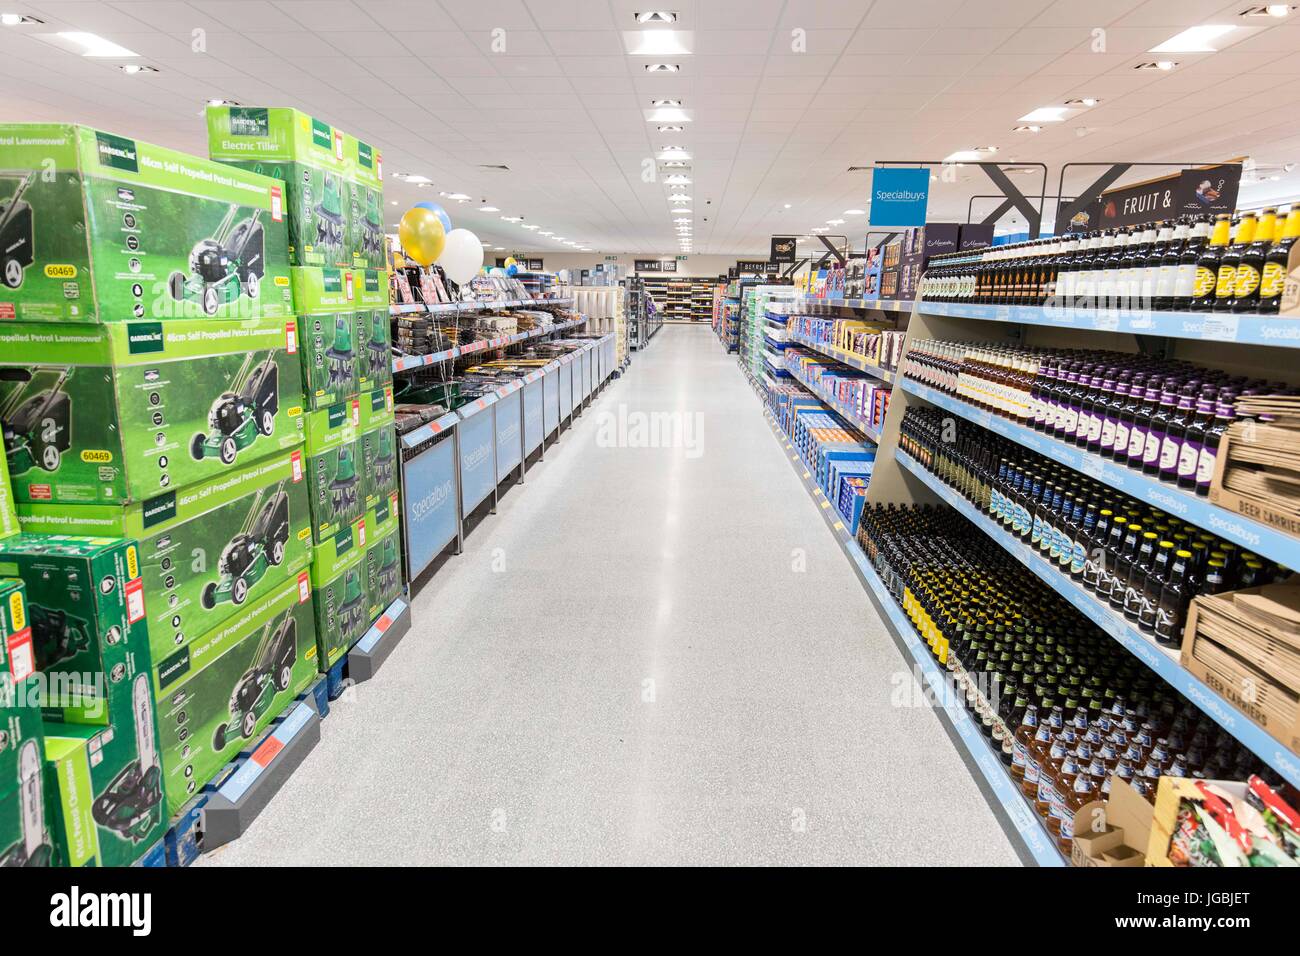 Fotos del interior de un supermercado Aldi Foto de stock